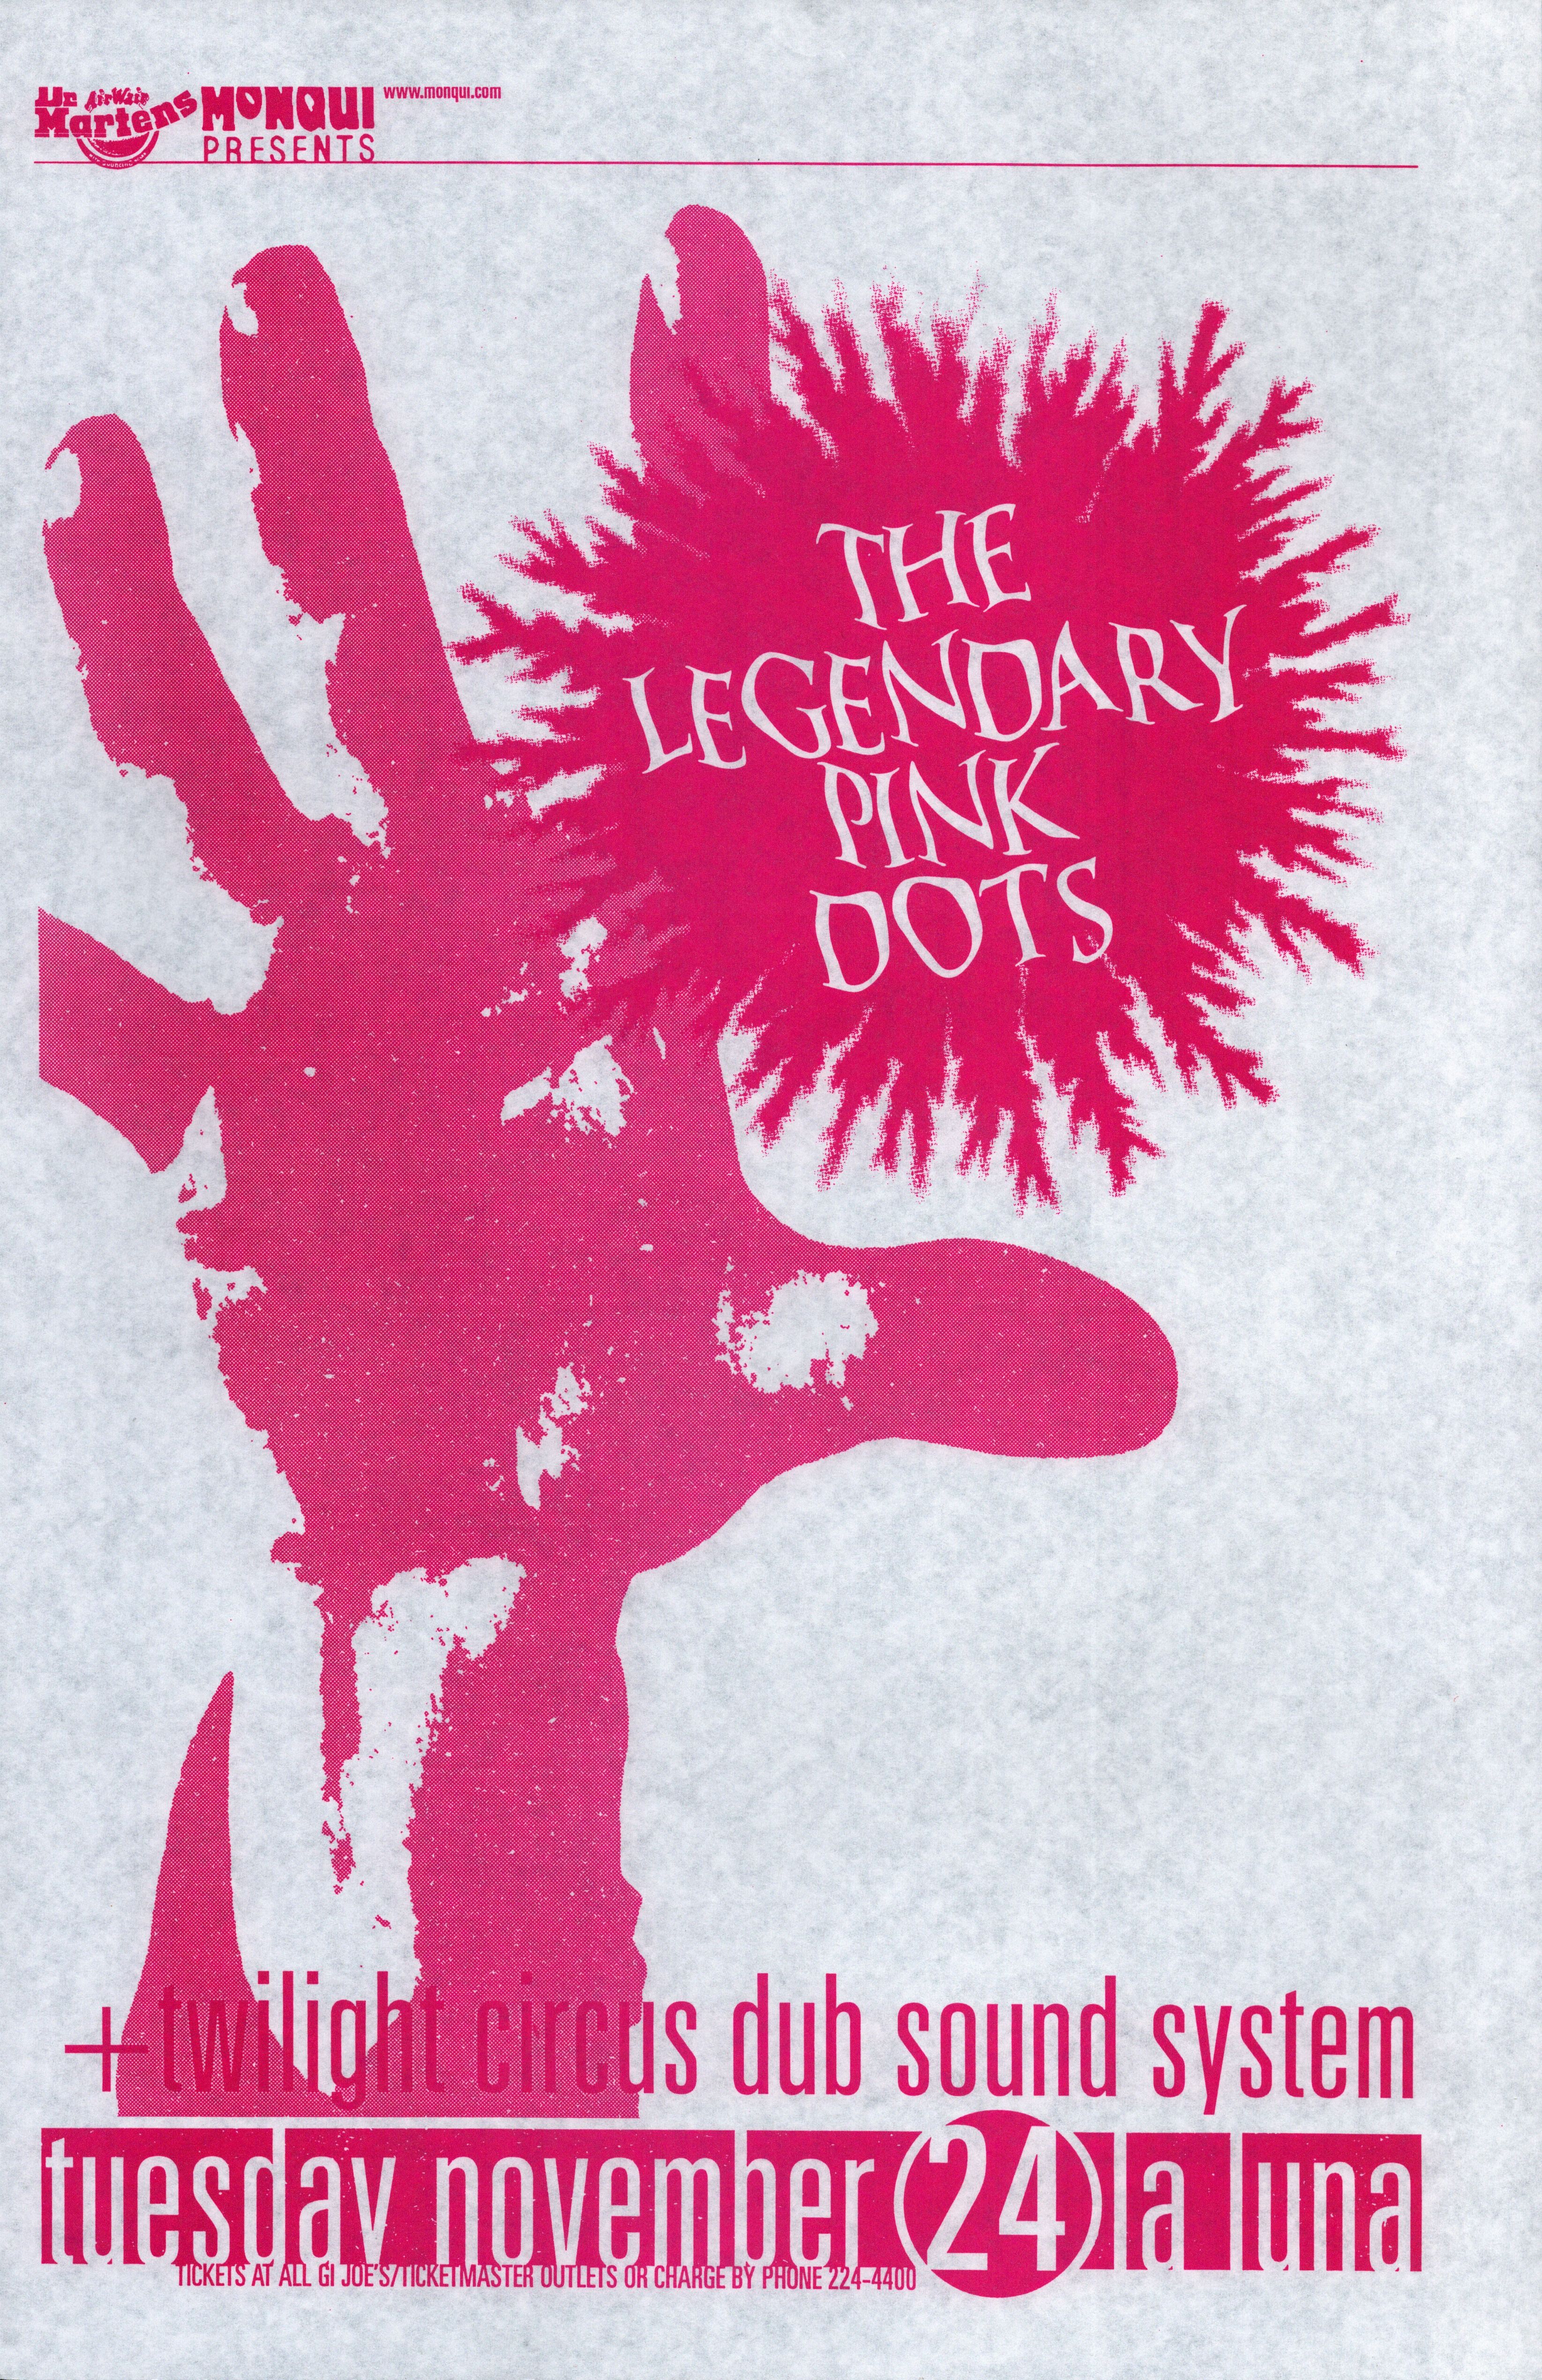 MXP-141.10 Legendary Pink Dots La Luna 1998 Concert Poster